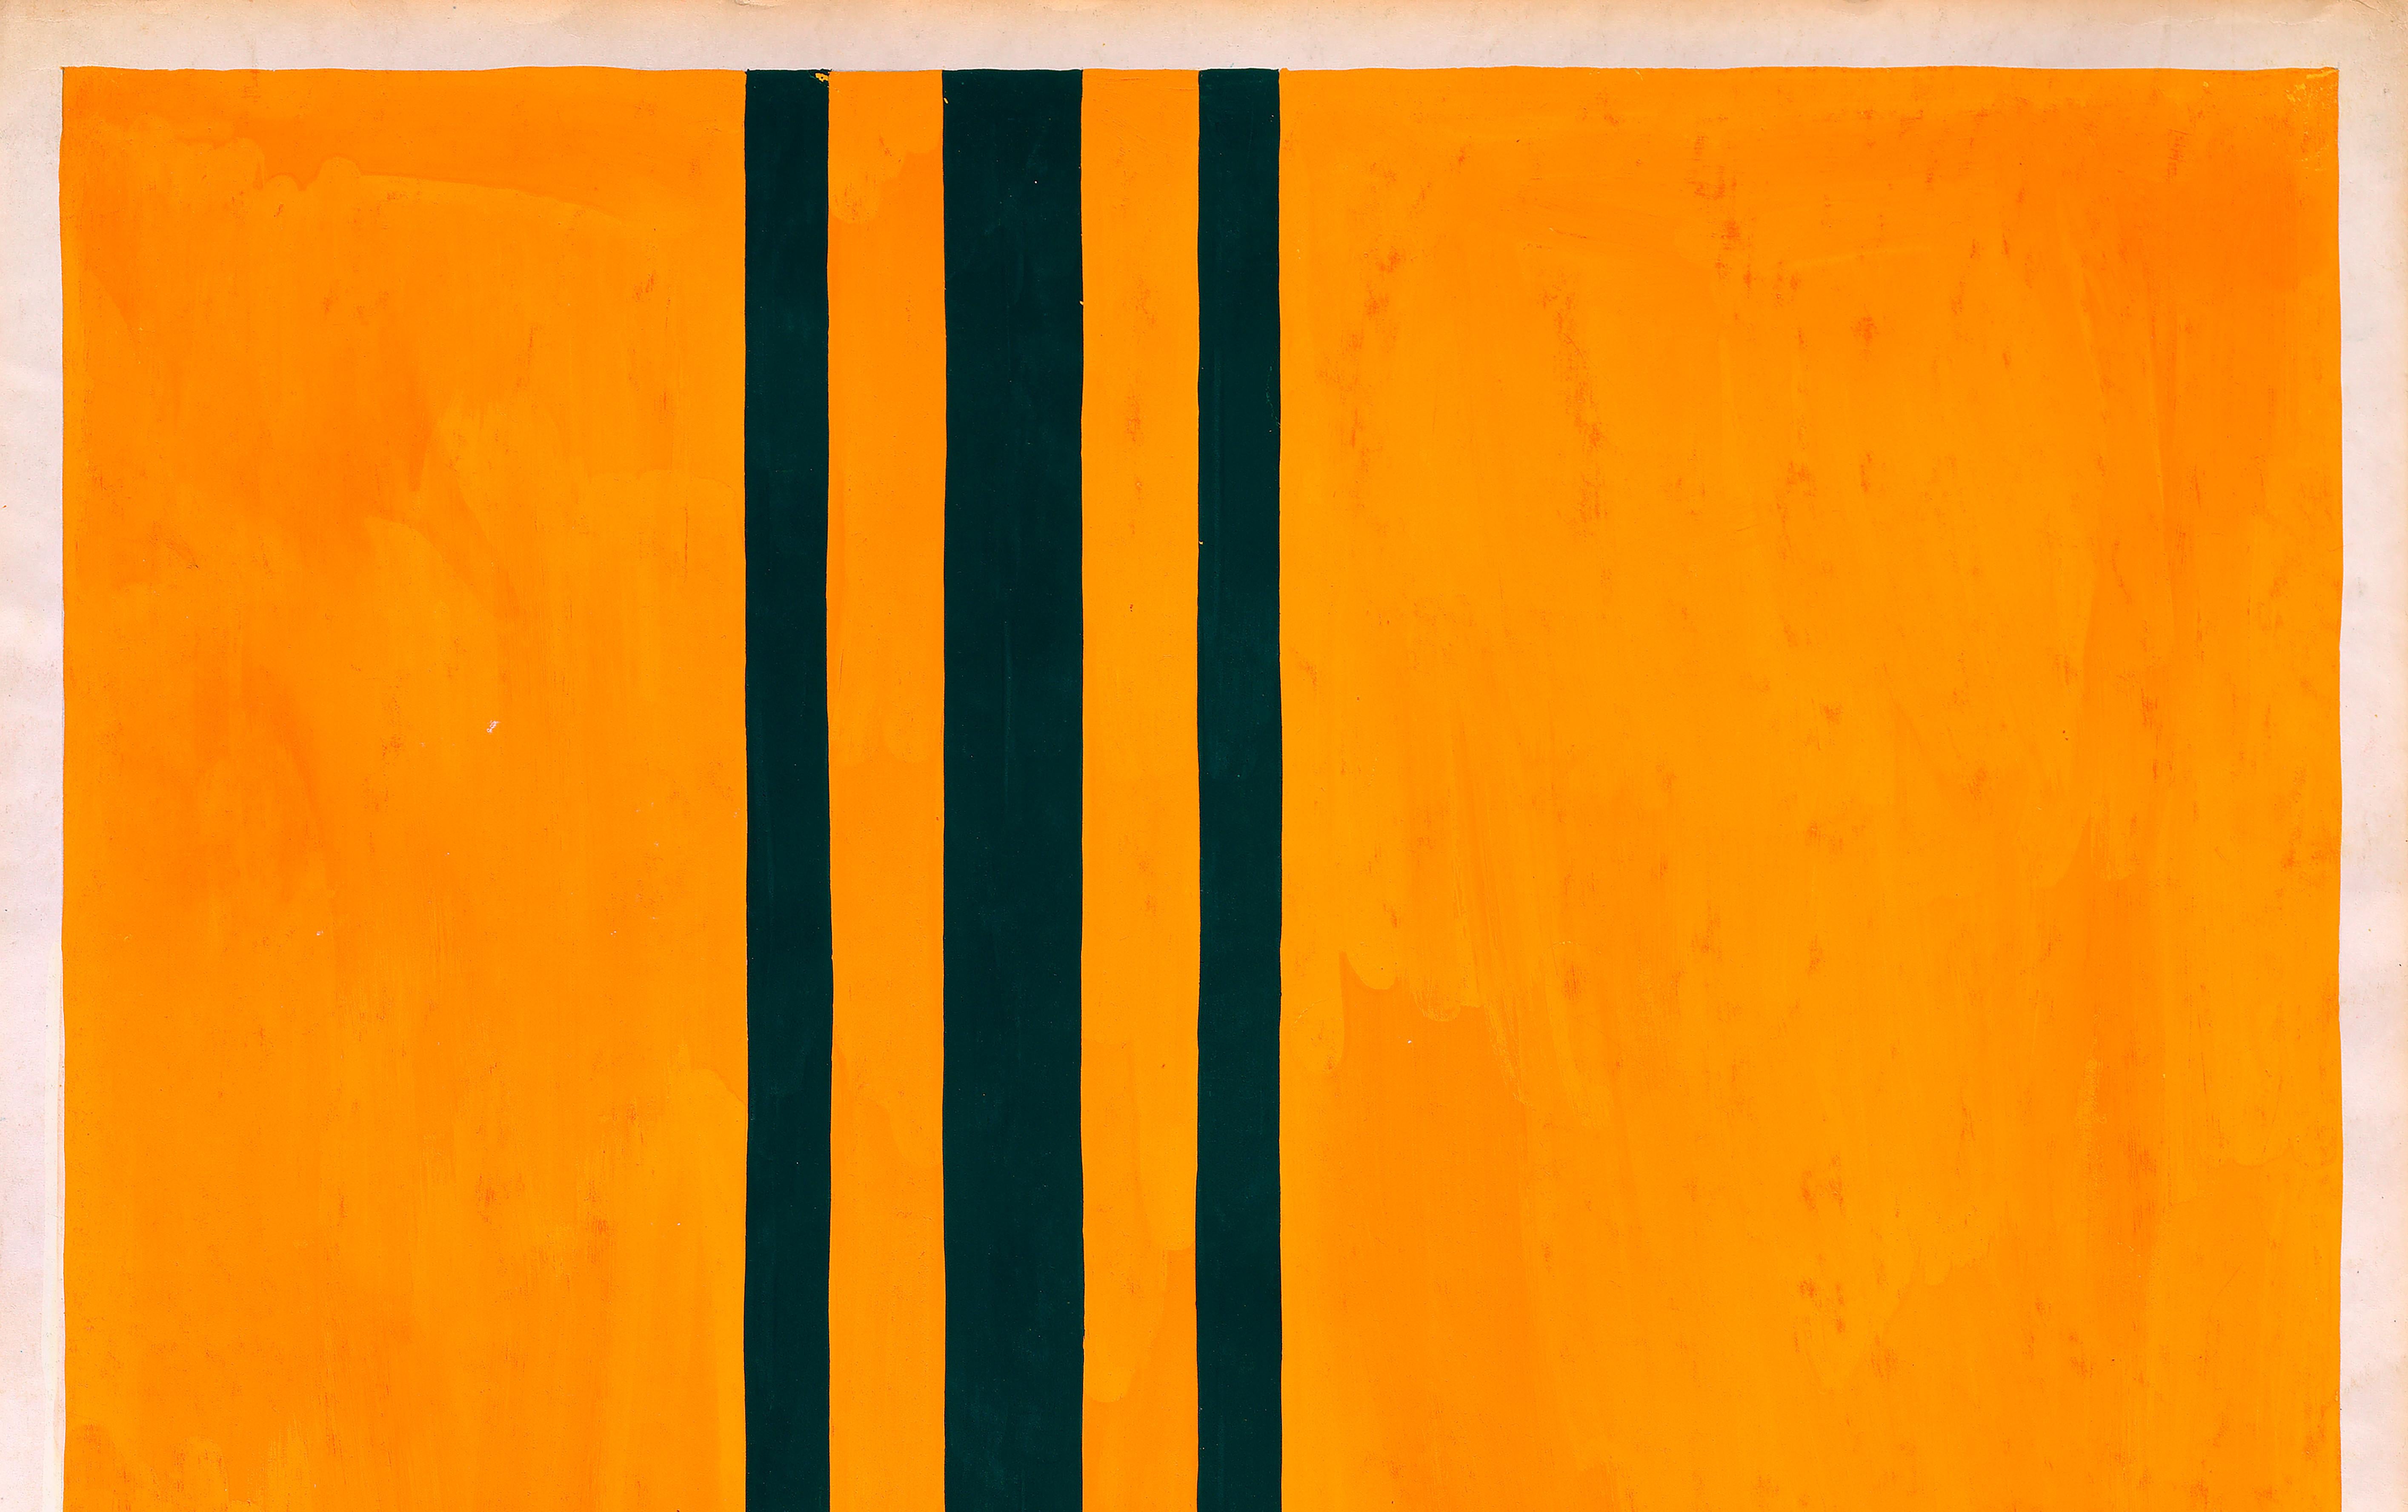 Conception textile originale des années 70 peinte à la main à la gouache, couleur orange et verte sur papier - Orange Still-Life par Unknown